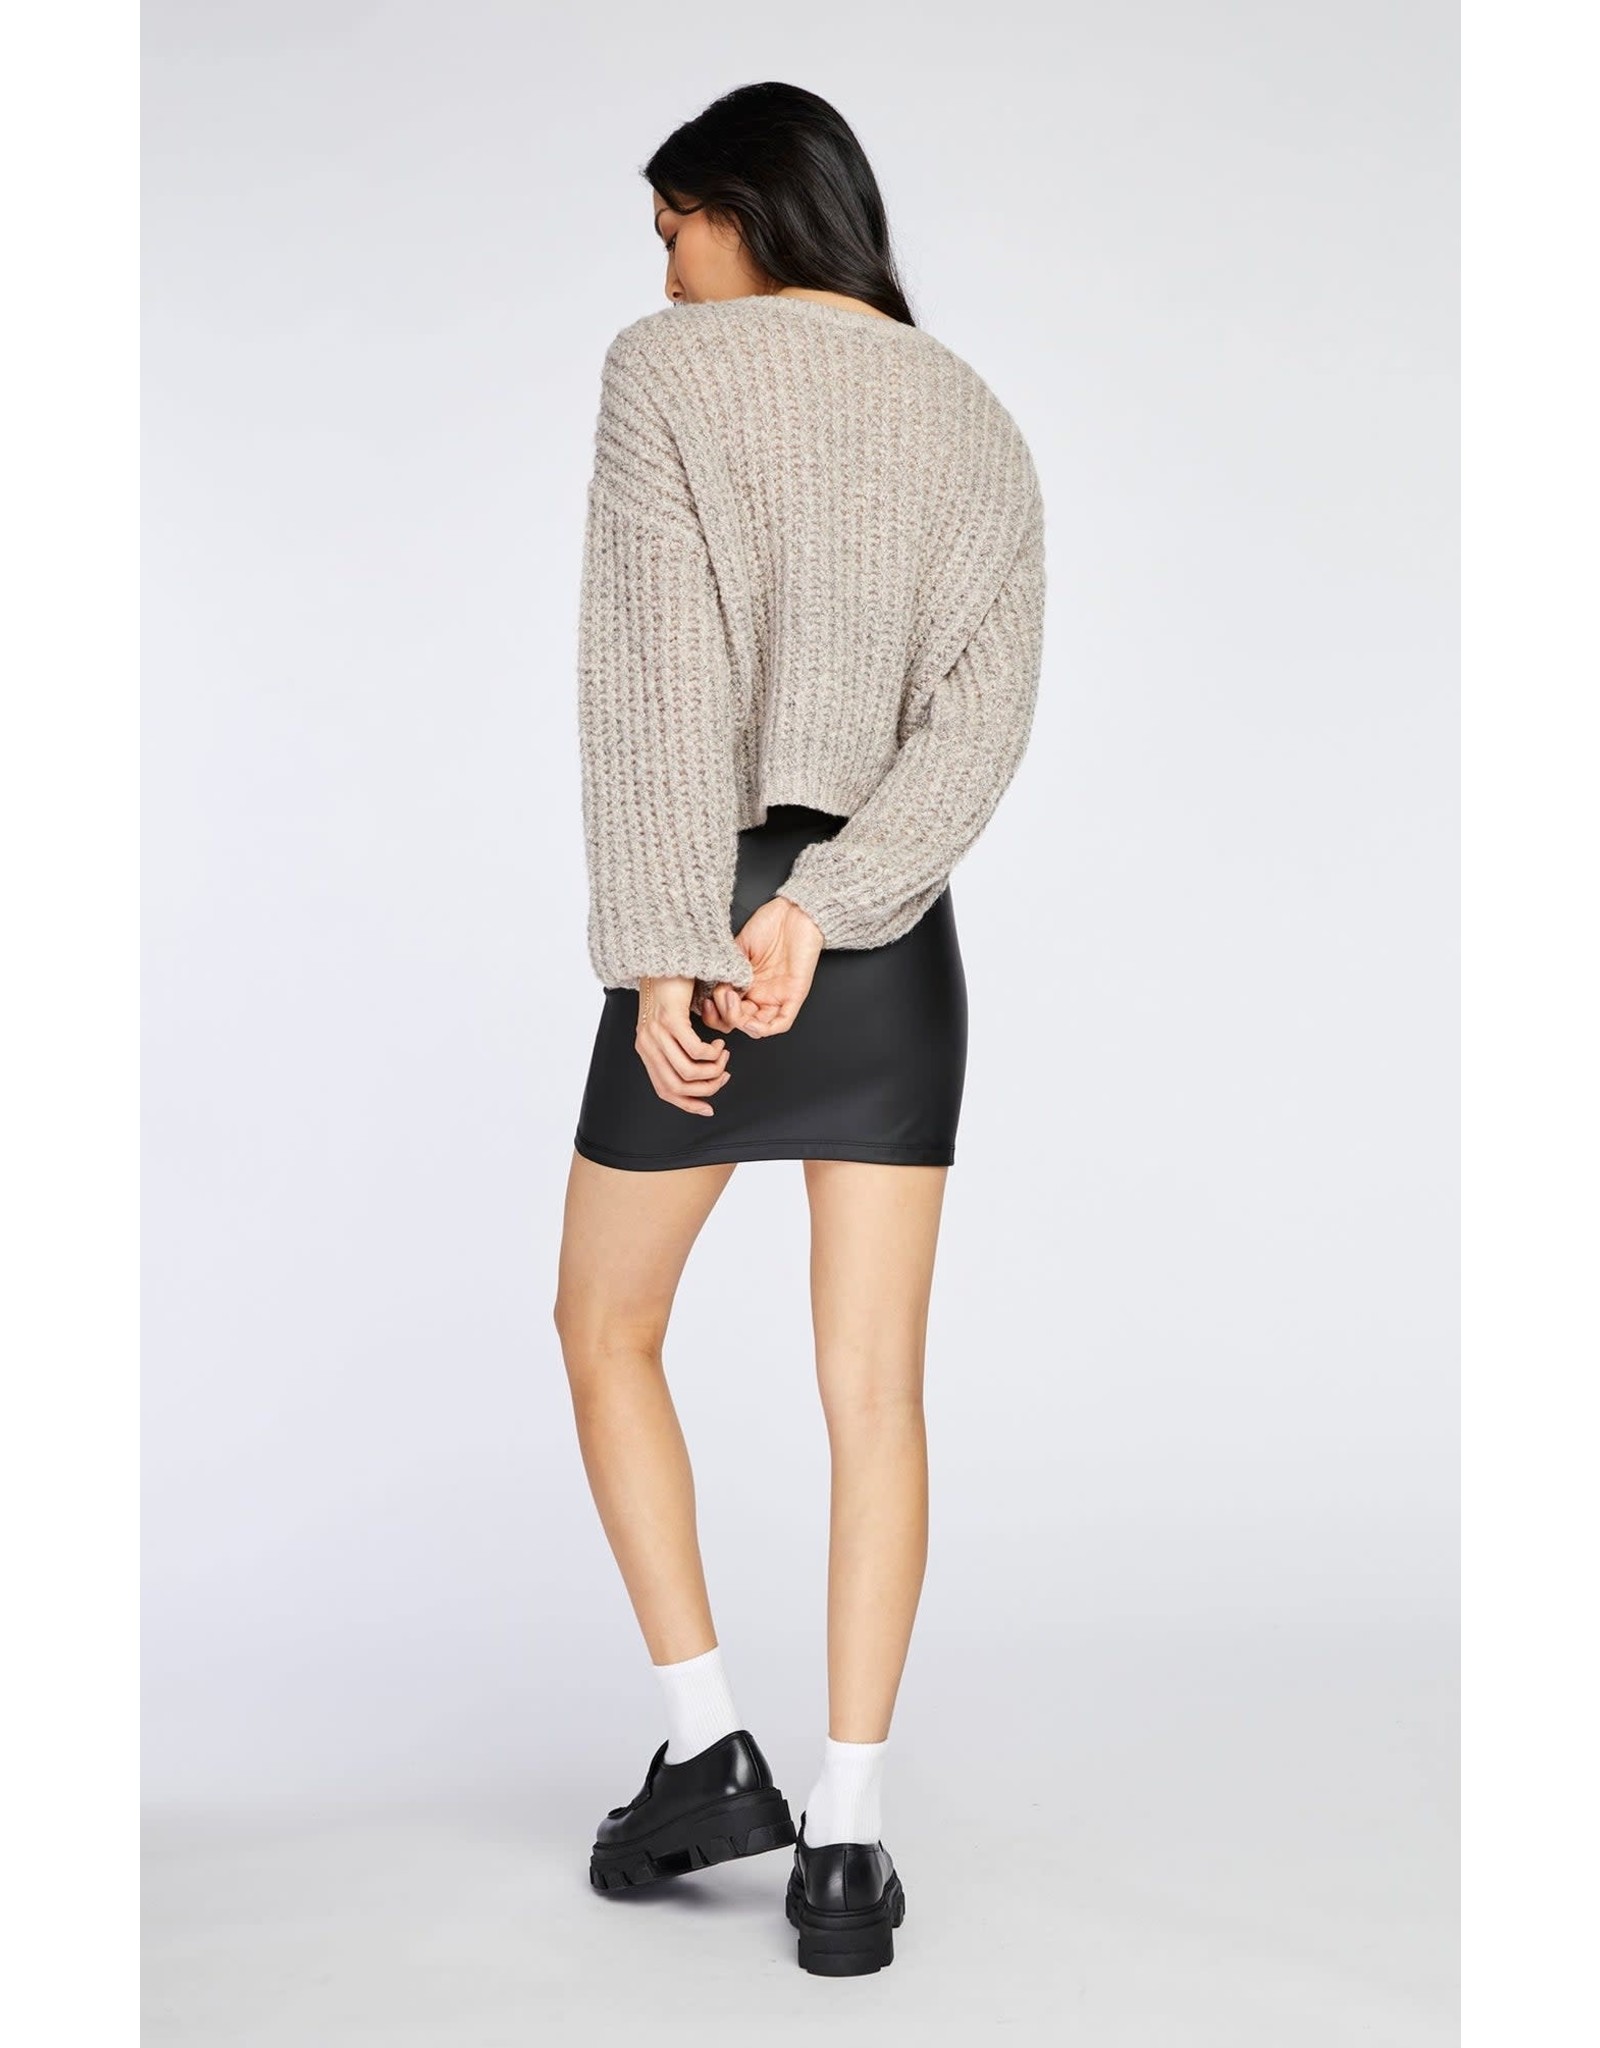 Gentle Fawn Matilda Sweater